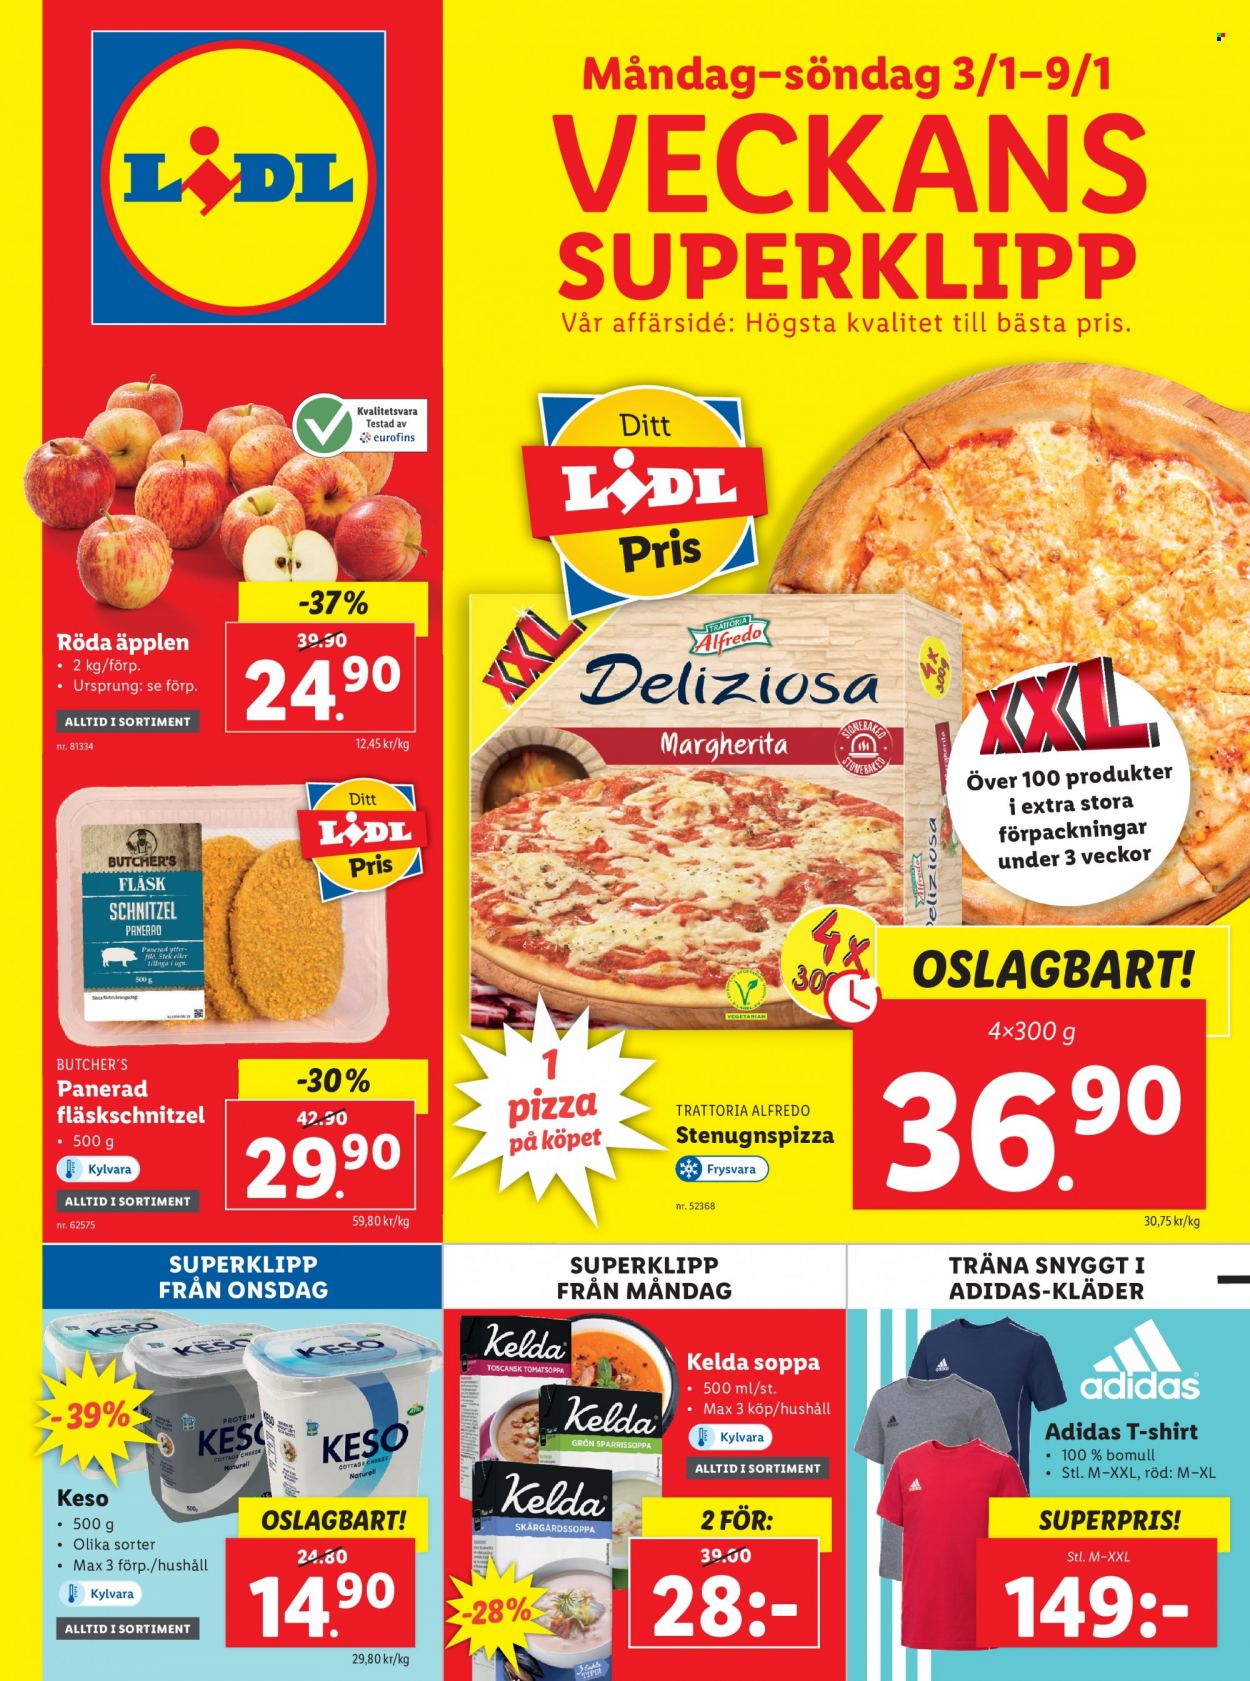 Lidl reklamblad - 3/1 2022 - 9/1 2022 - varor från reklamblad - äpplen, flaskschnitzel, pizza, soppa, t-shirt, Kläder. Sida 1.